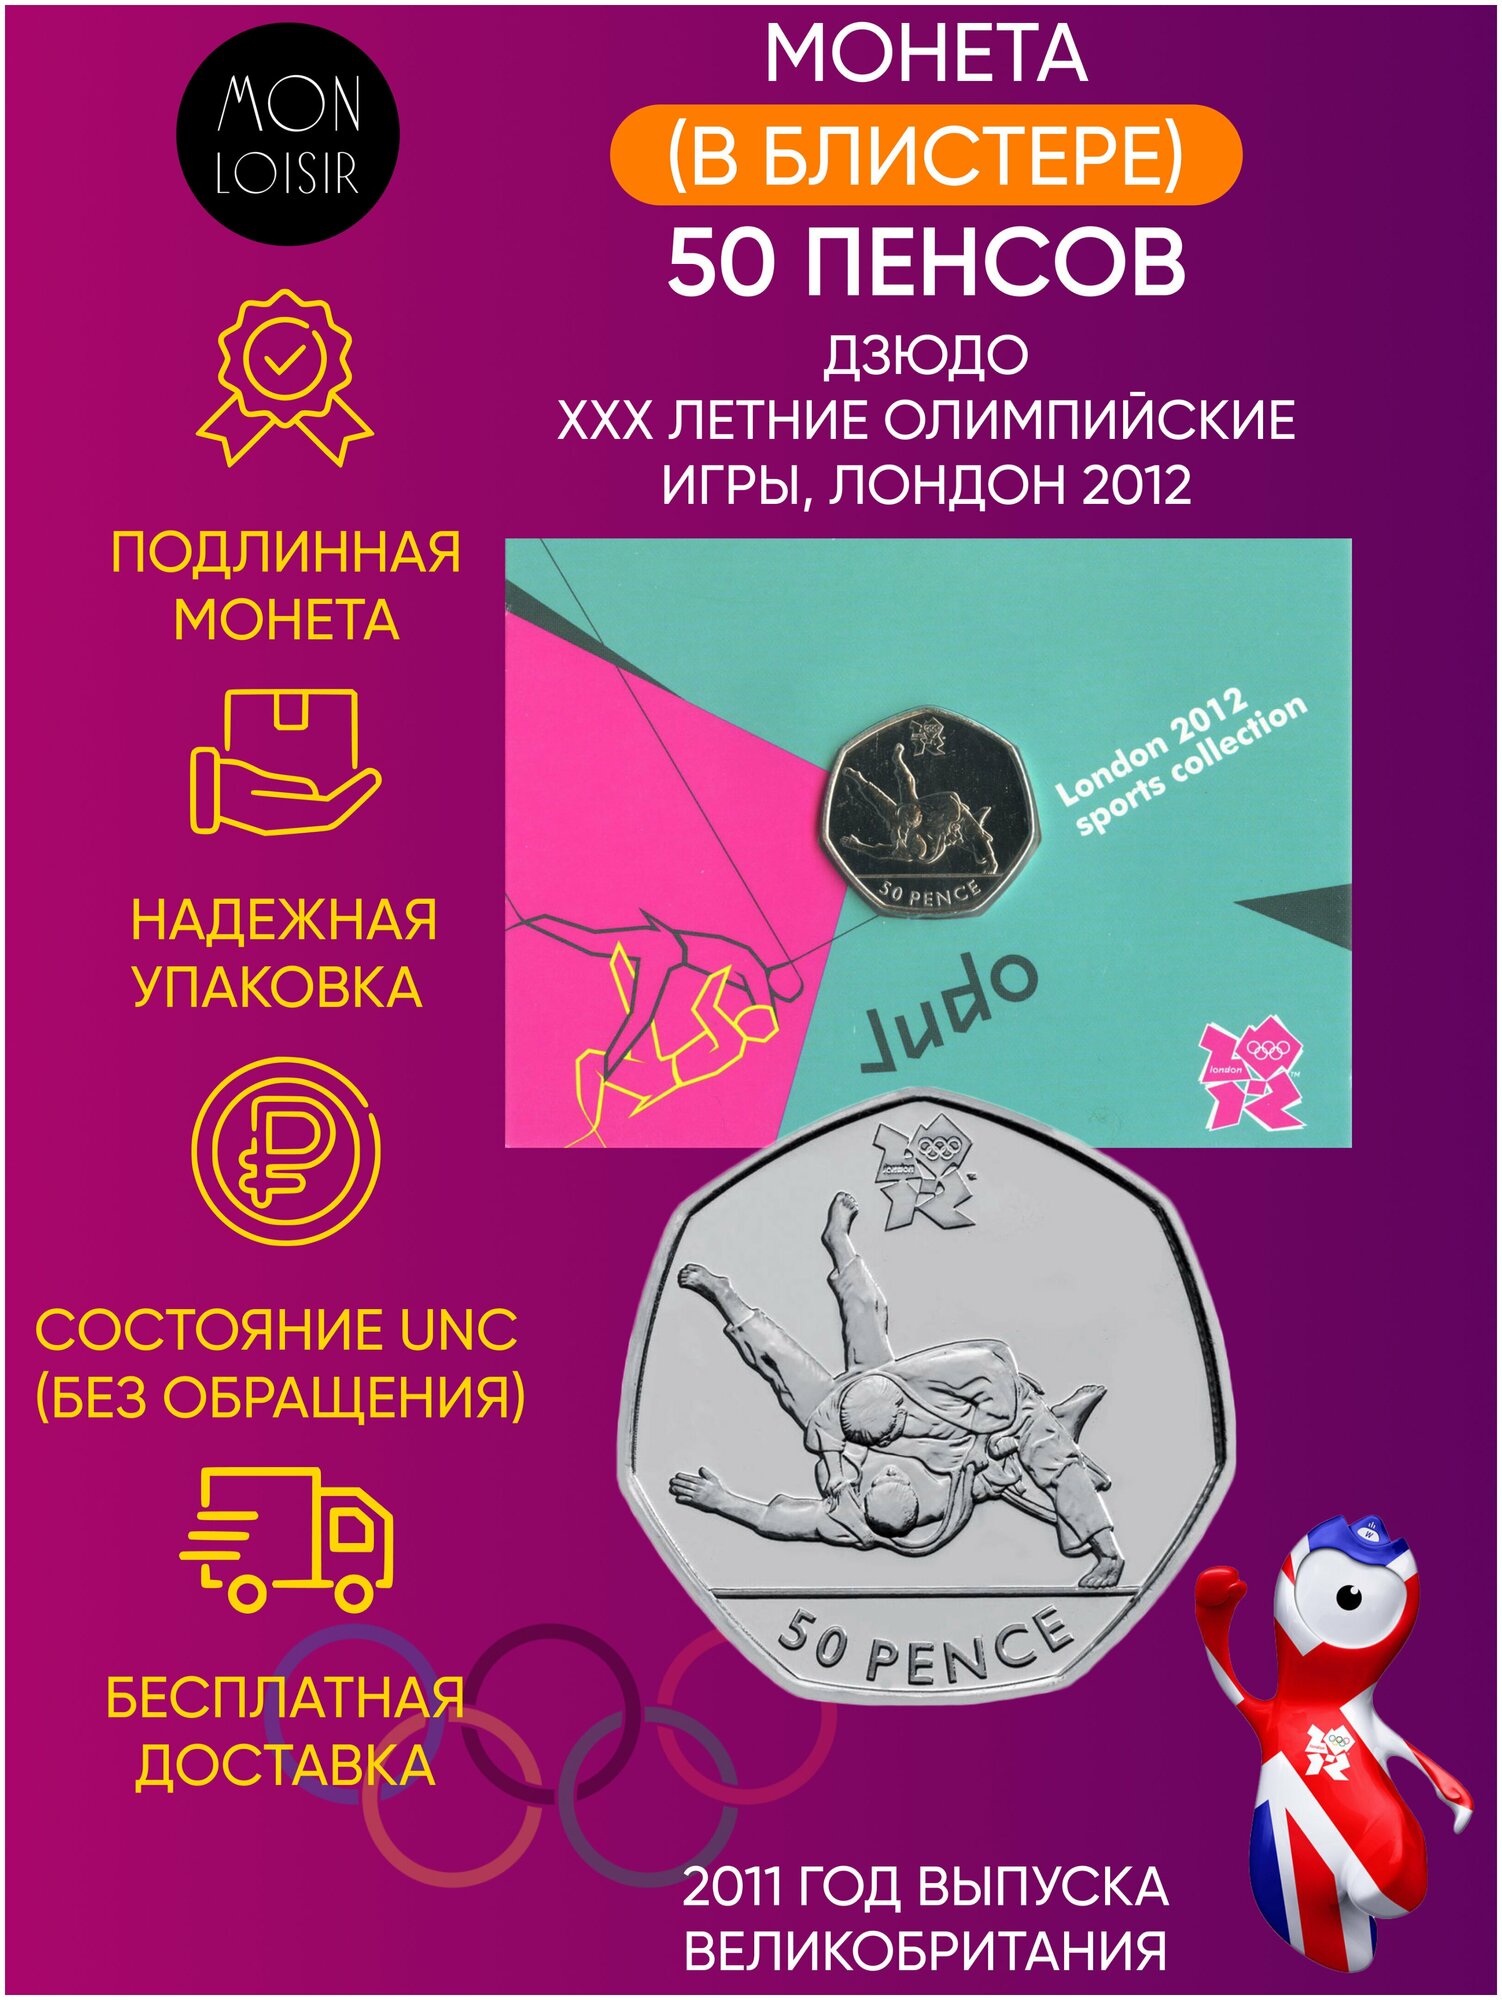 Памятная монета в блистере 50 пенсов. Дзюдо, XXX летние Олимпийские Игры, Лондон 2012. Великобритания, 2011 г. в. UNC (без обращения)